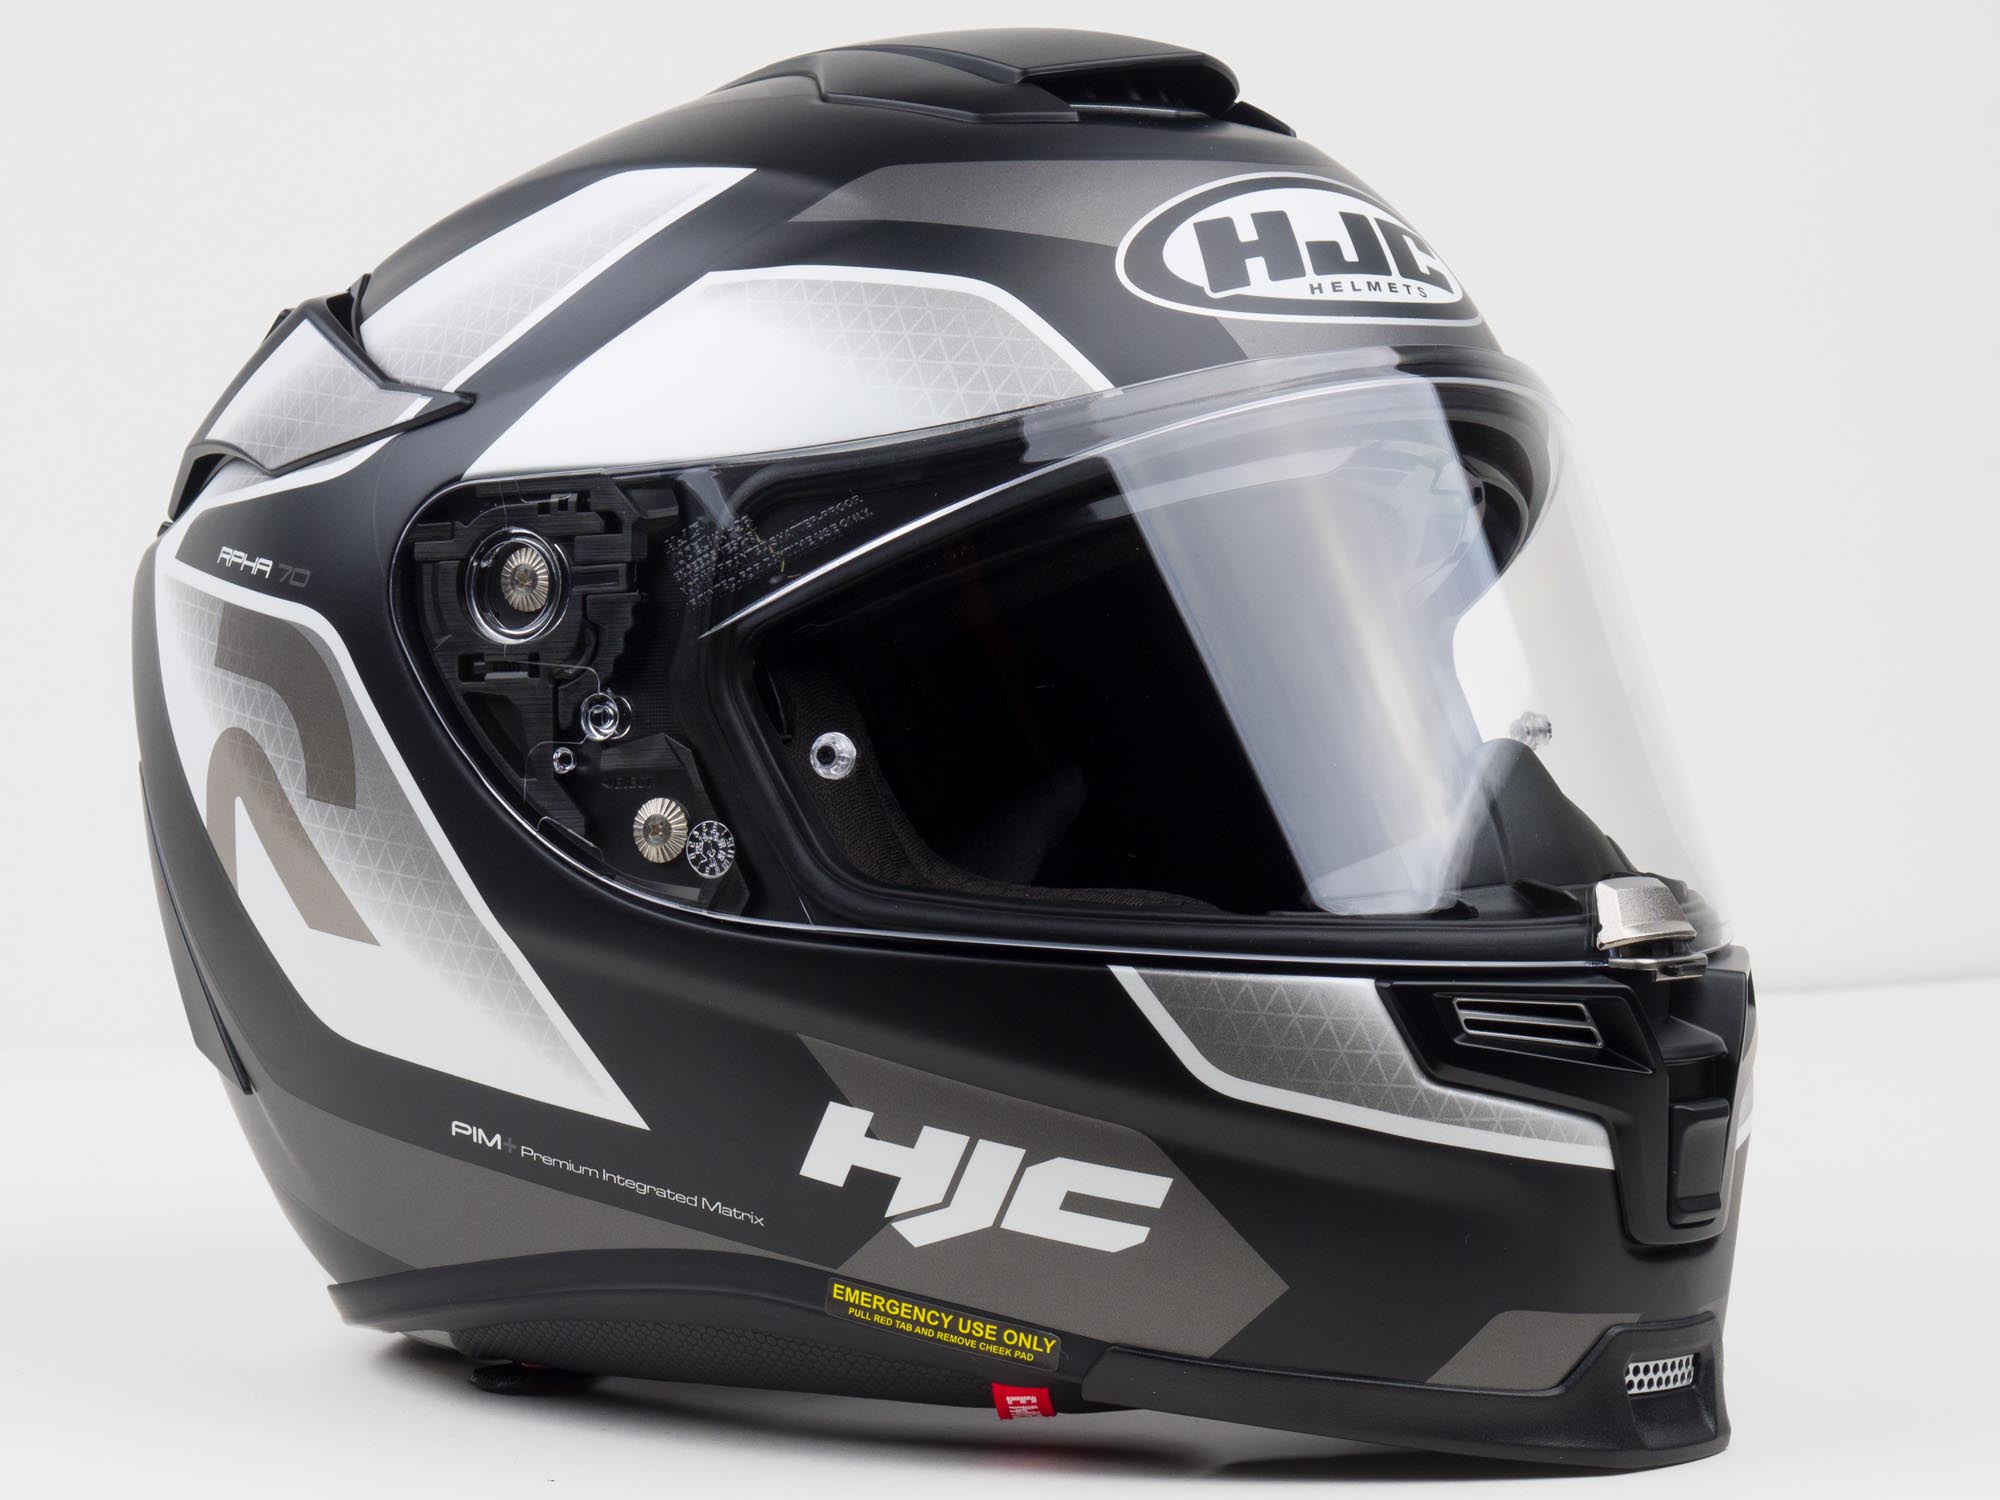 HJC Helmets 1694-944 Green/White/Black Large RPHA-70 ST Grandal Helmet 